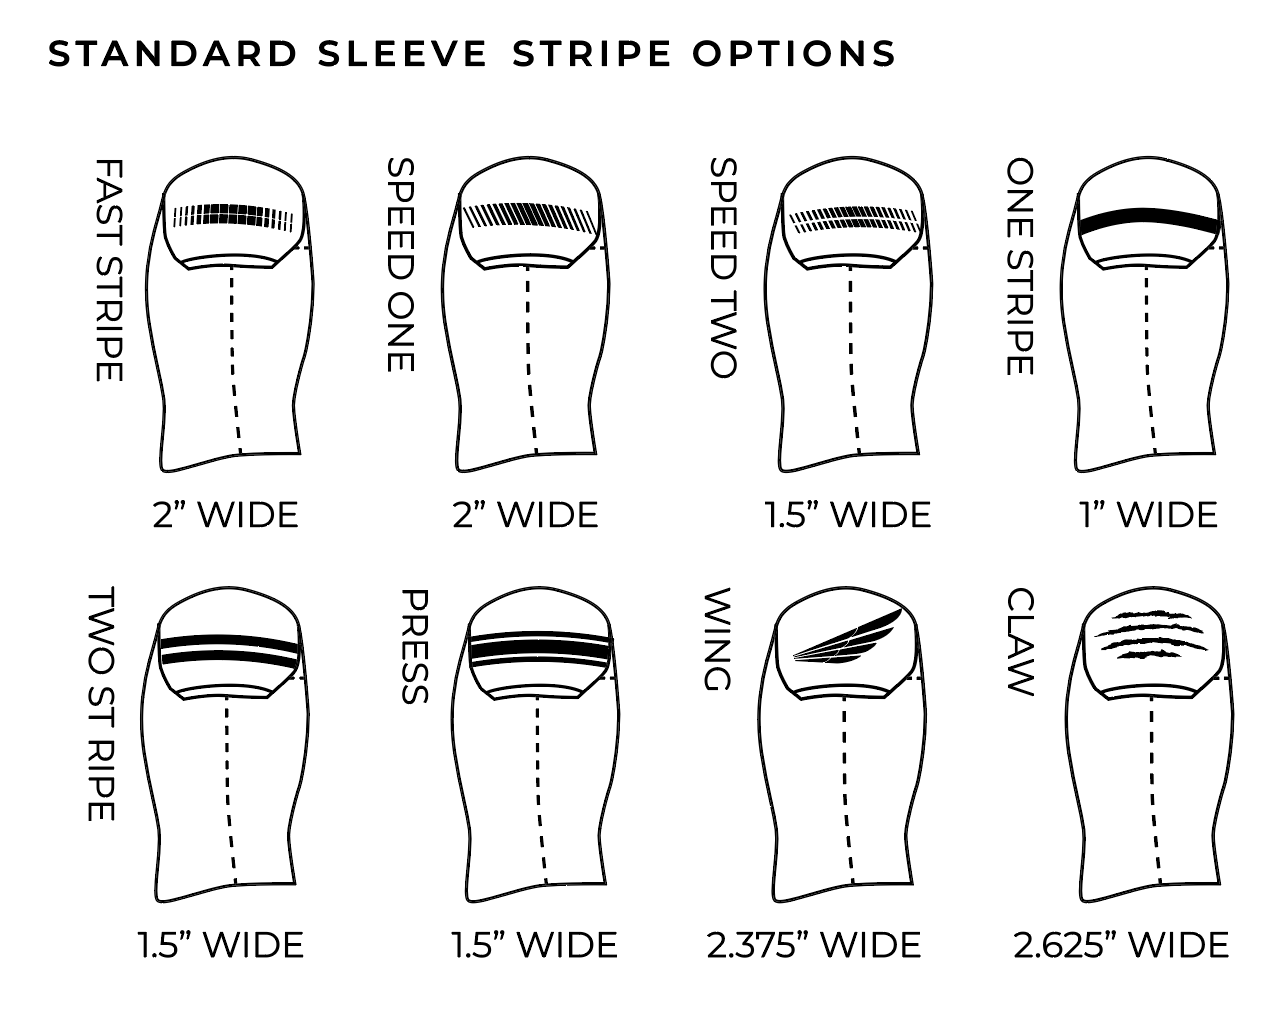 Standard Shoulder Stripe Options